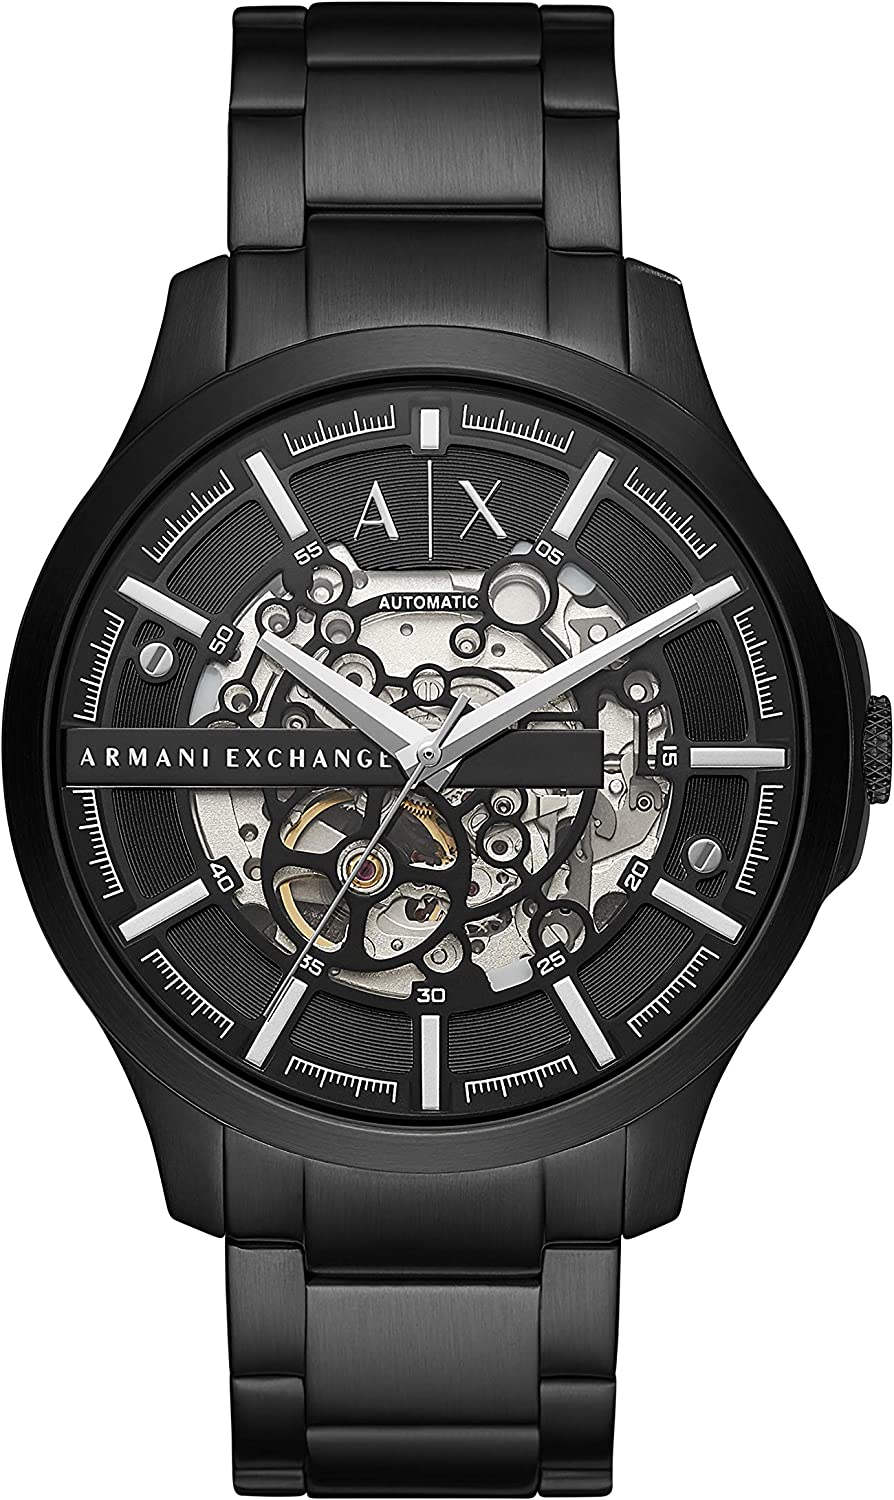 アルマーニ エクスチェンジ 腕時計 メンズ ブラック シンプル 機械式 自動巻き ARMANI EXCHANGE AX2418 並行輸入品